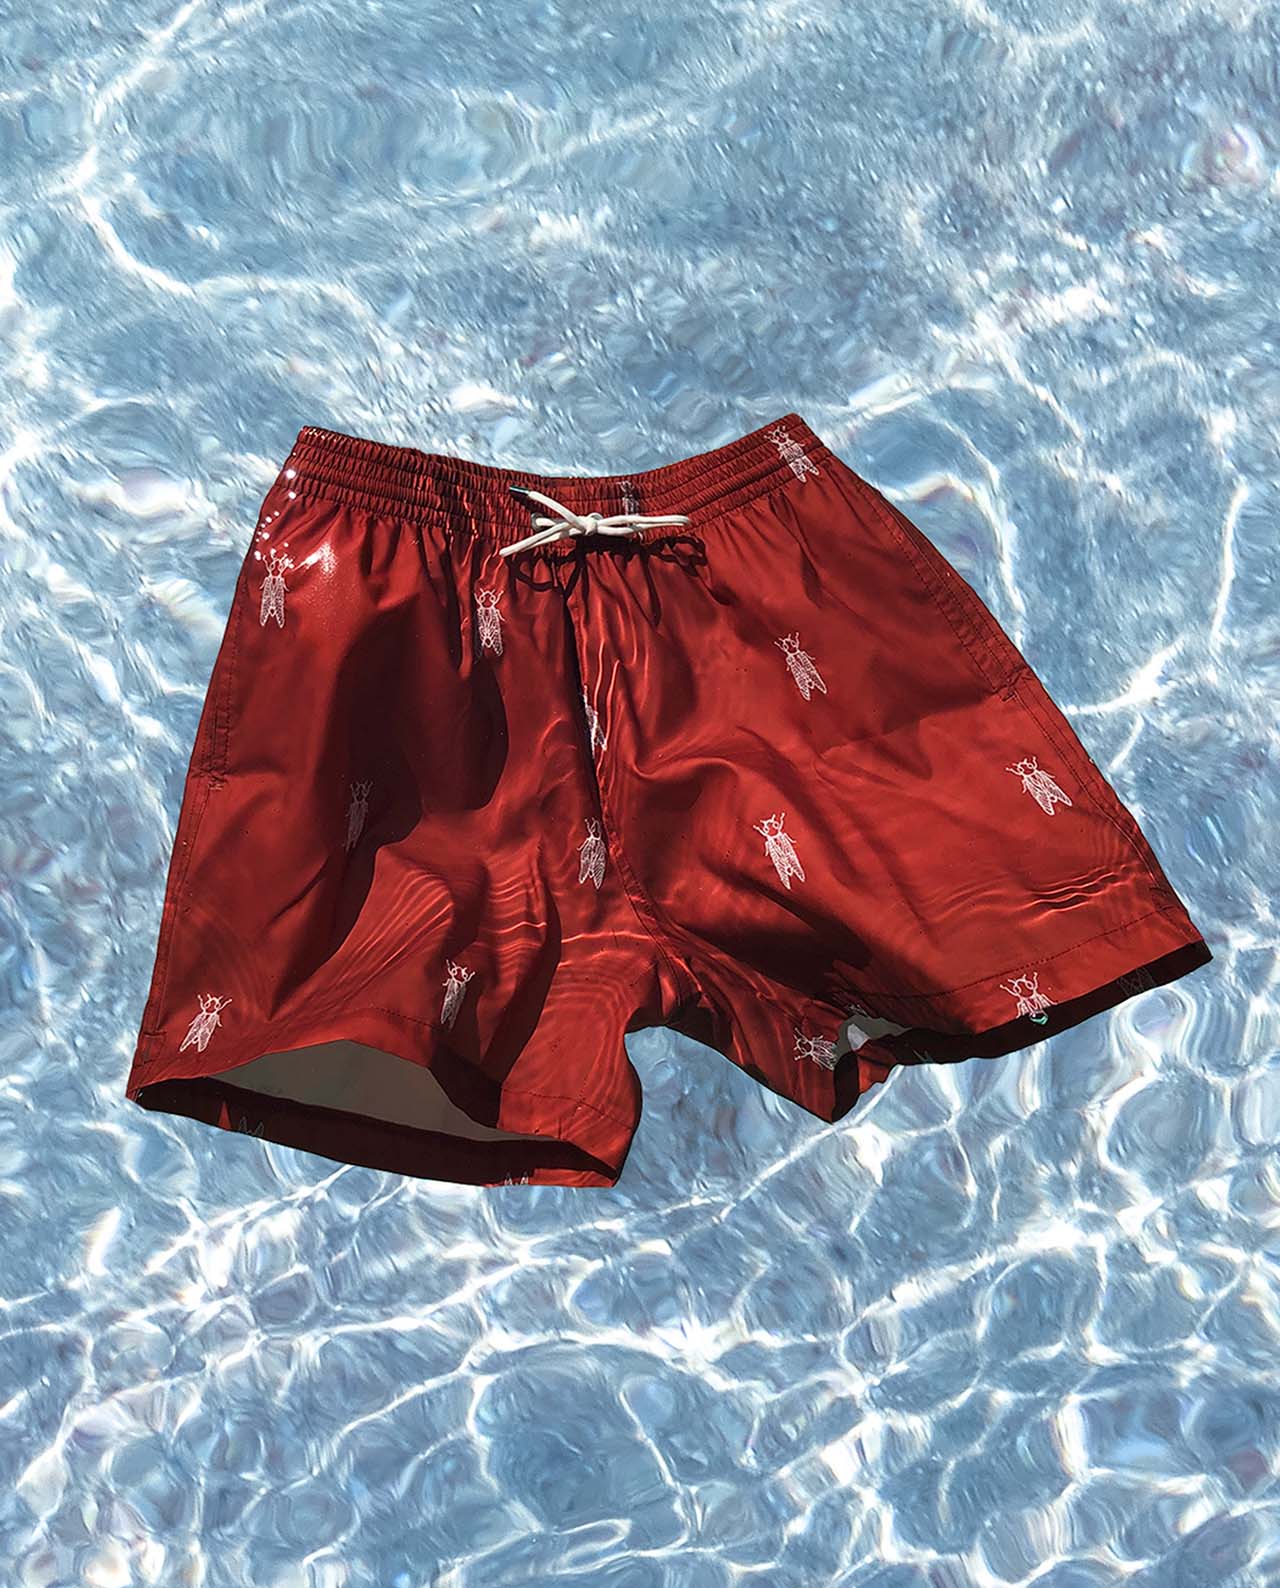 marché commun calanque swimwear maillot de bain homme polyester recyclé brodé éco-responsable éthique rouge brique cigales